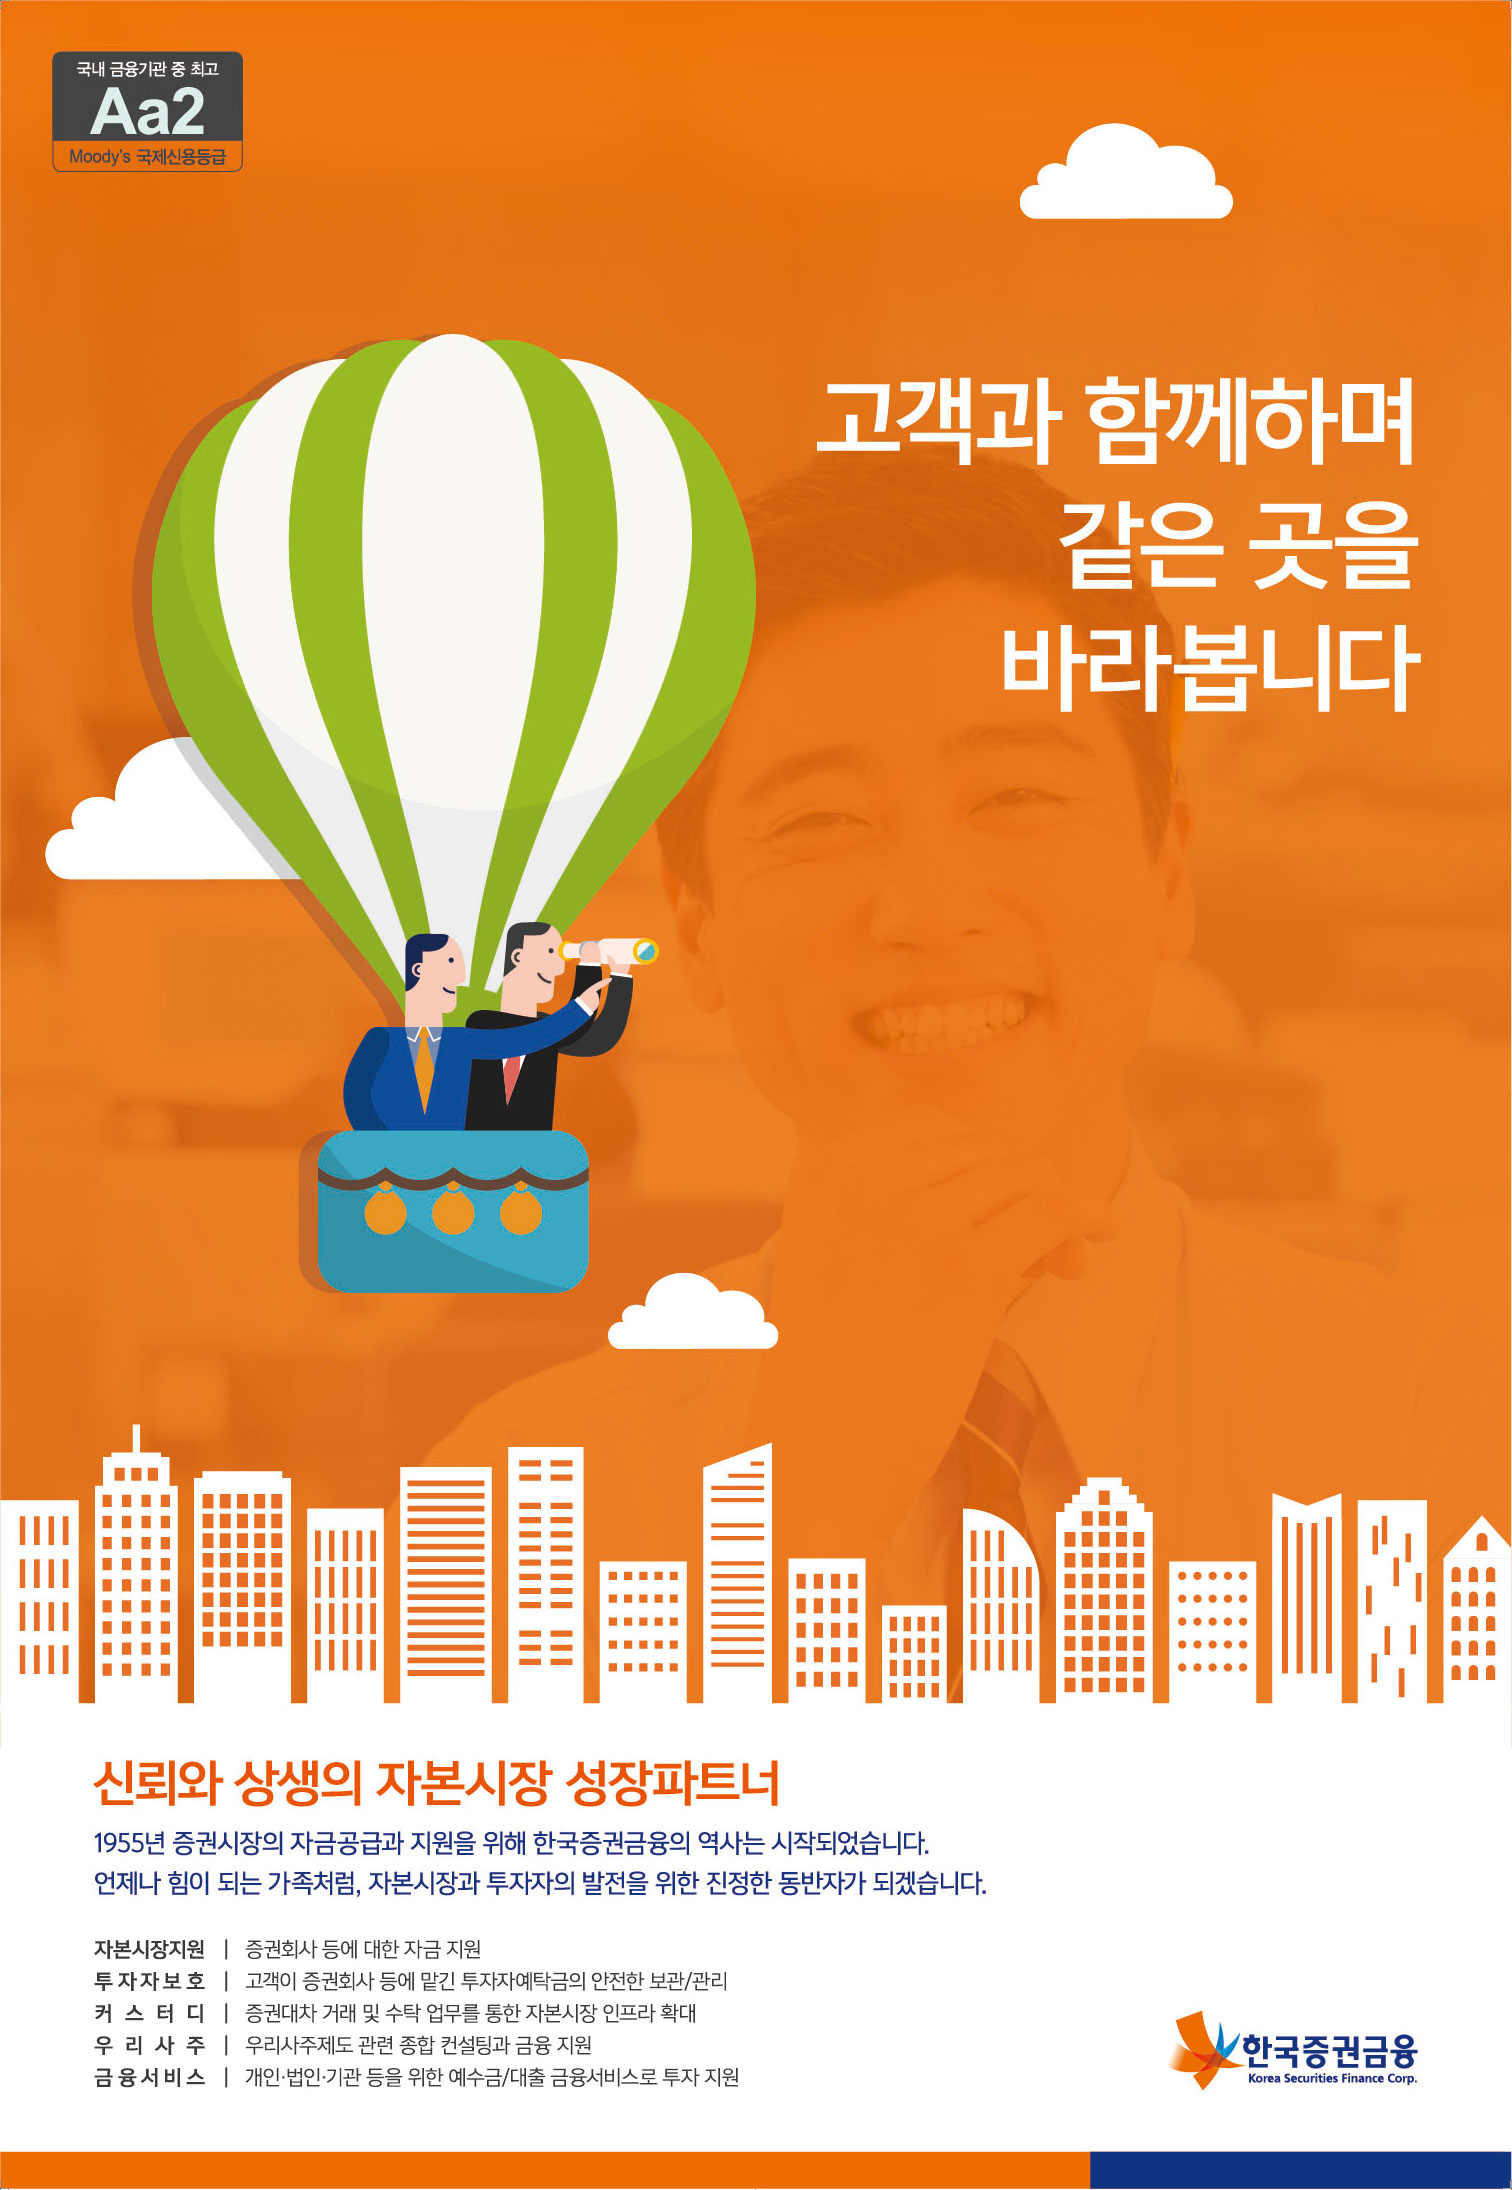 15년도 08월 26일 한국증권금융 홍보 포스터